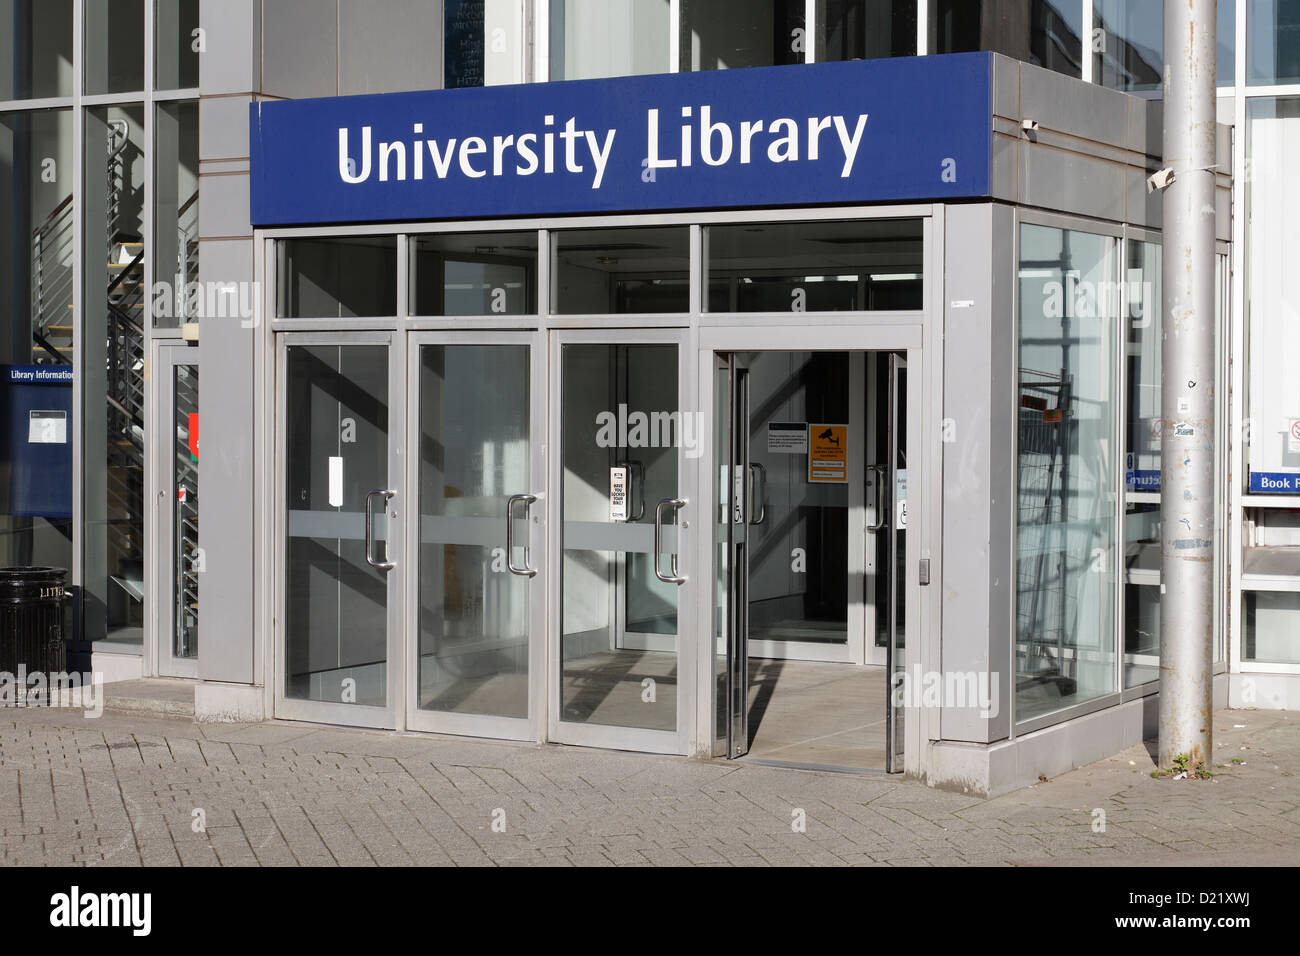 L'entrée de la bibliothèque a changé. Entrée à la bibliothèque sur le campus de l'Université de Glasgow, Écosse, Royaume-Uni Banque D'Images